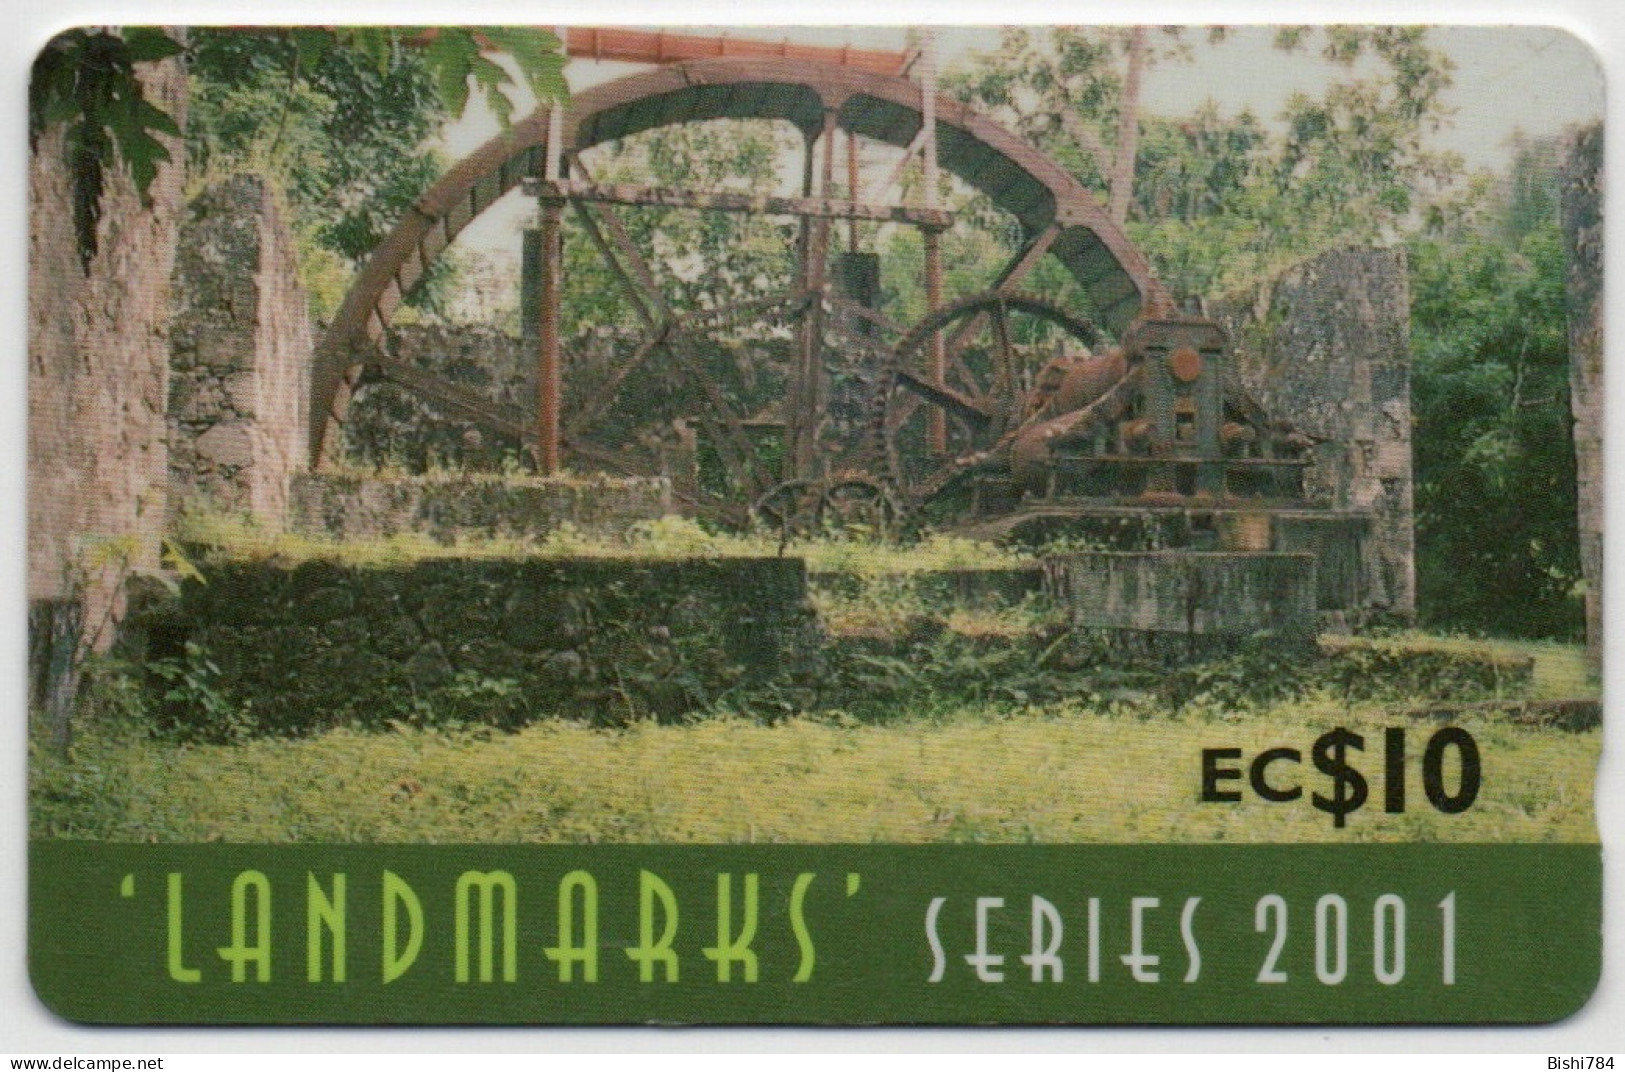 St. Lucia - Landmarks Series 2001 - Steam Sugar Mill - 337CSLG - St. Lucia